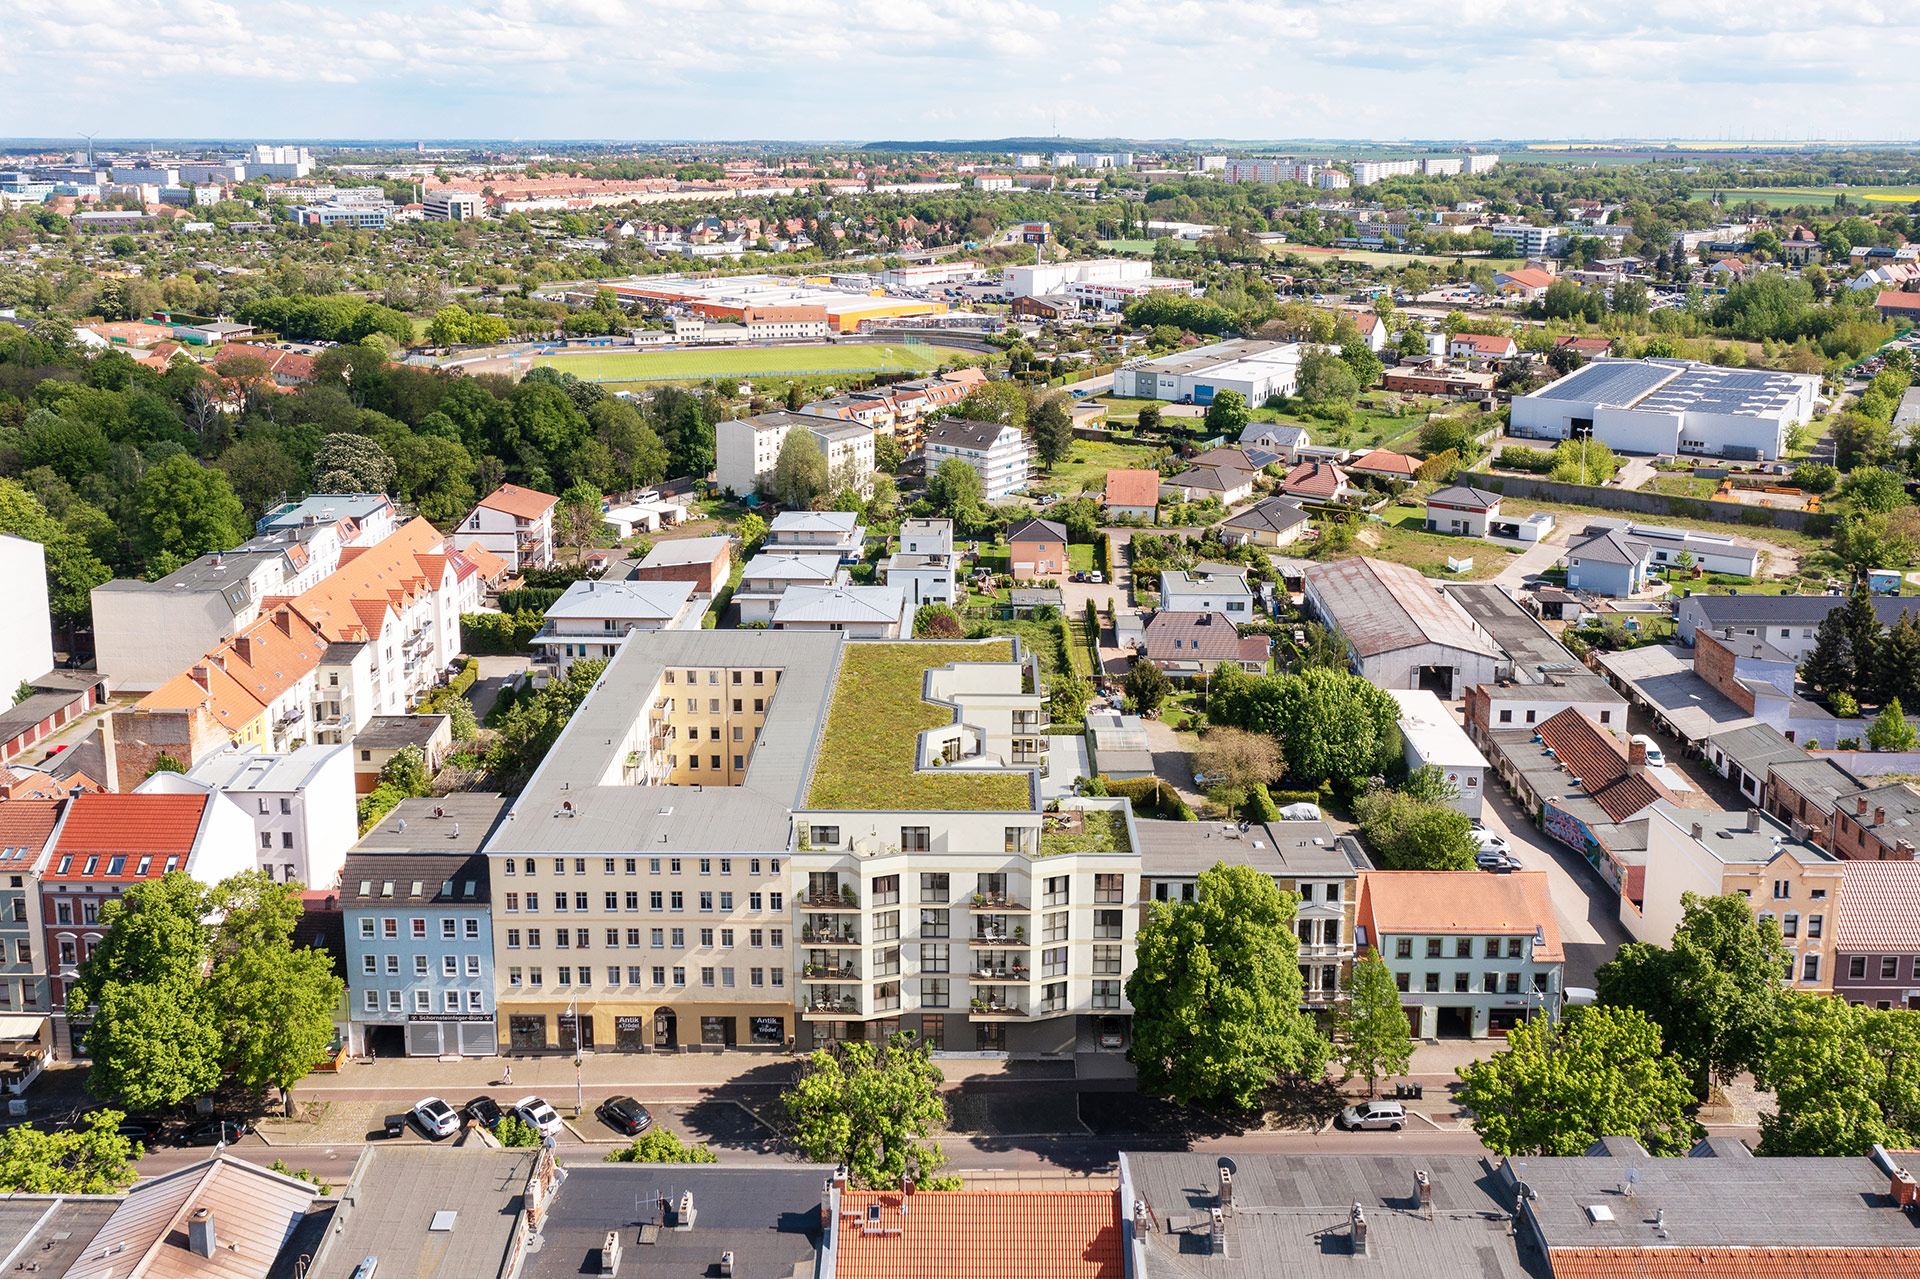 Standort Magdeburg: Nach Intel will auch Avnet bauen